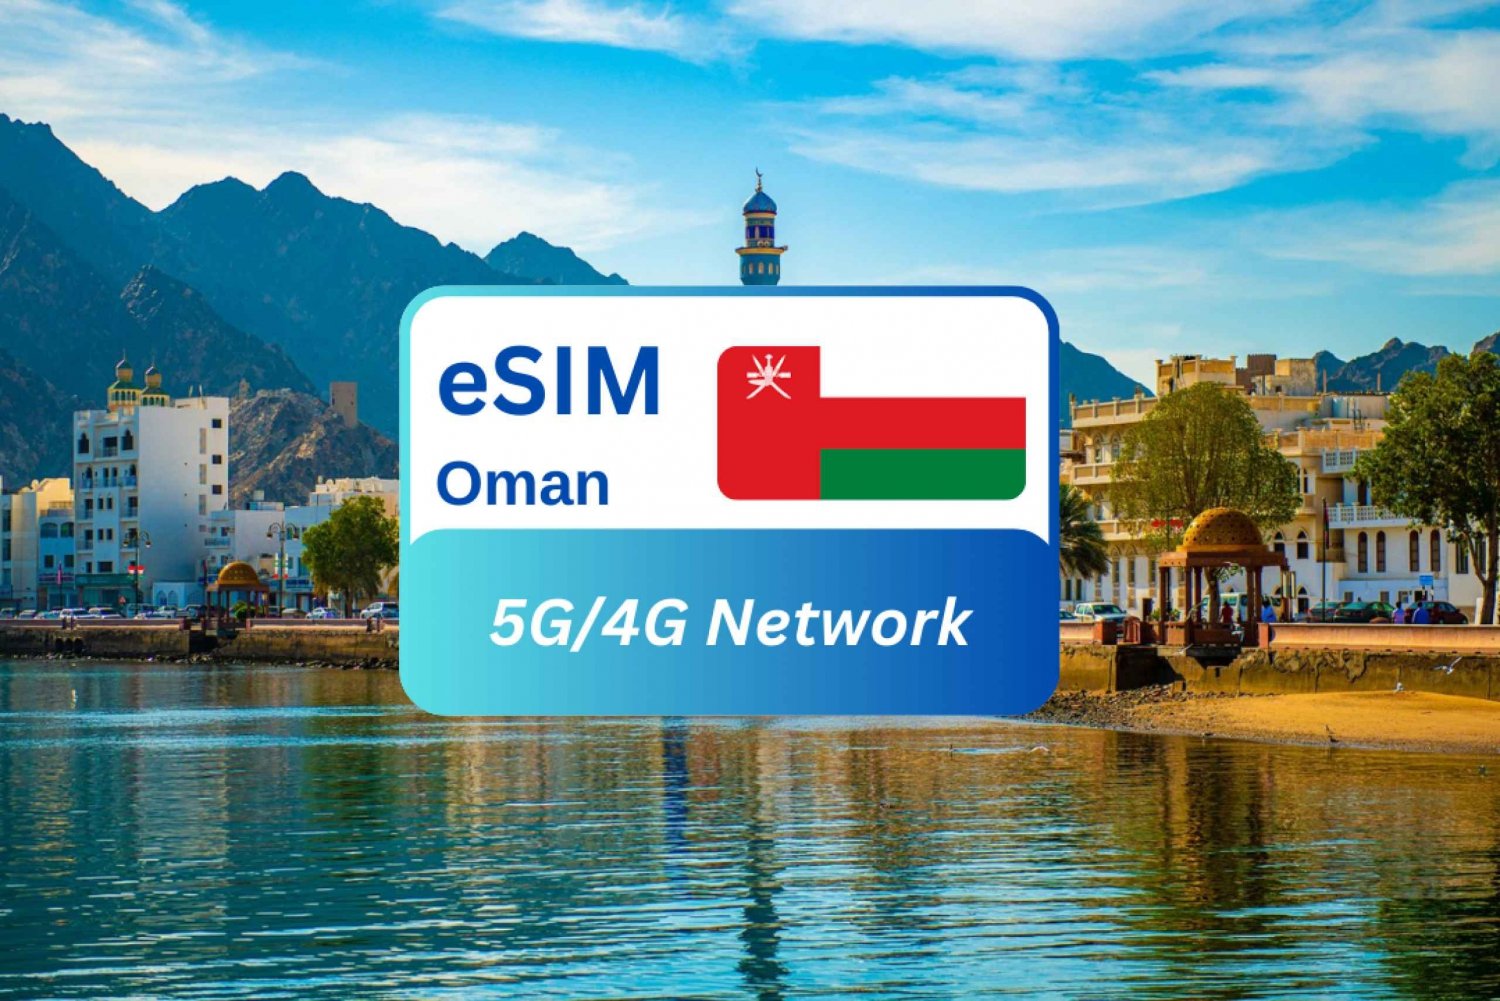 Mascat: Piano dati eSIM Premium dell'Oman per i viaggiatori